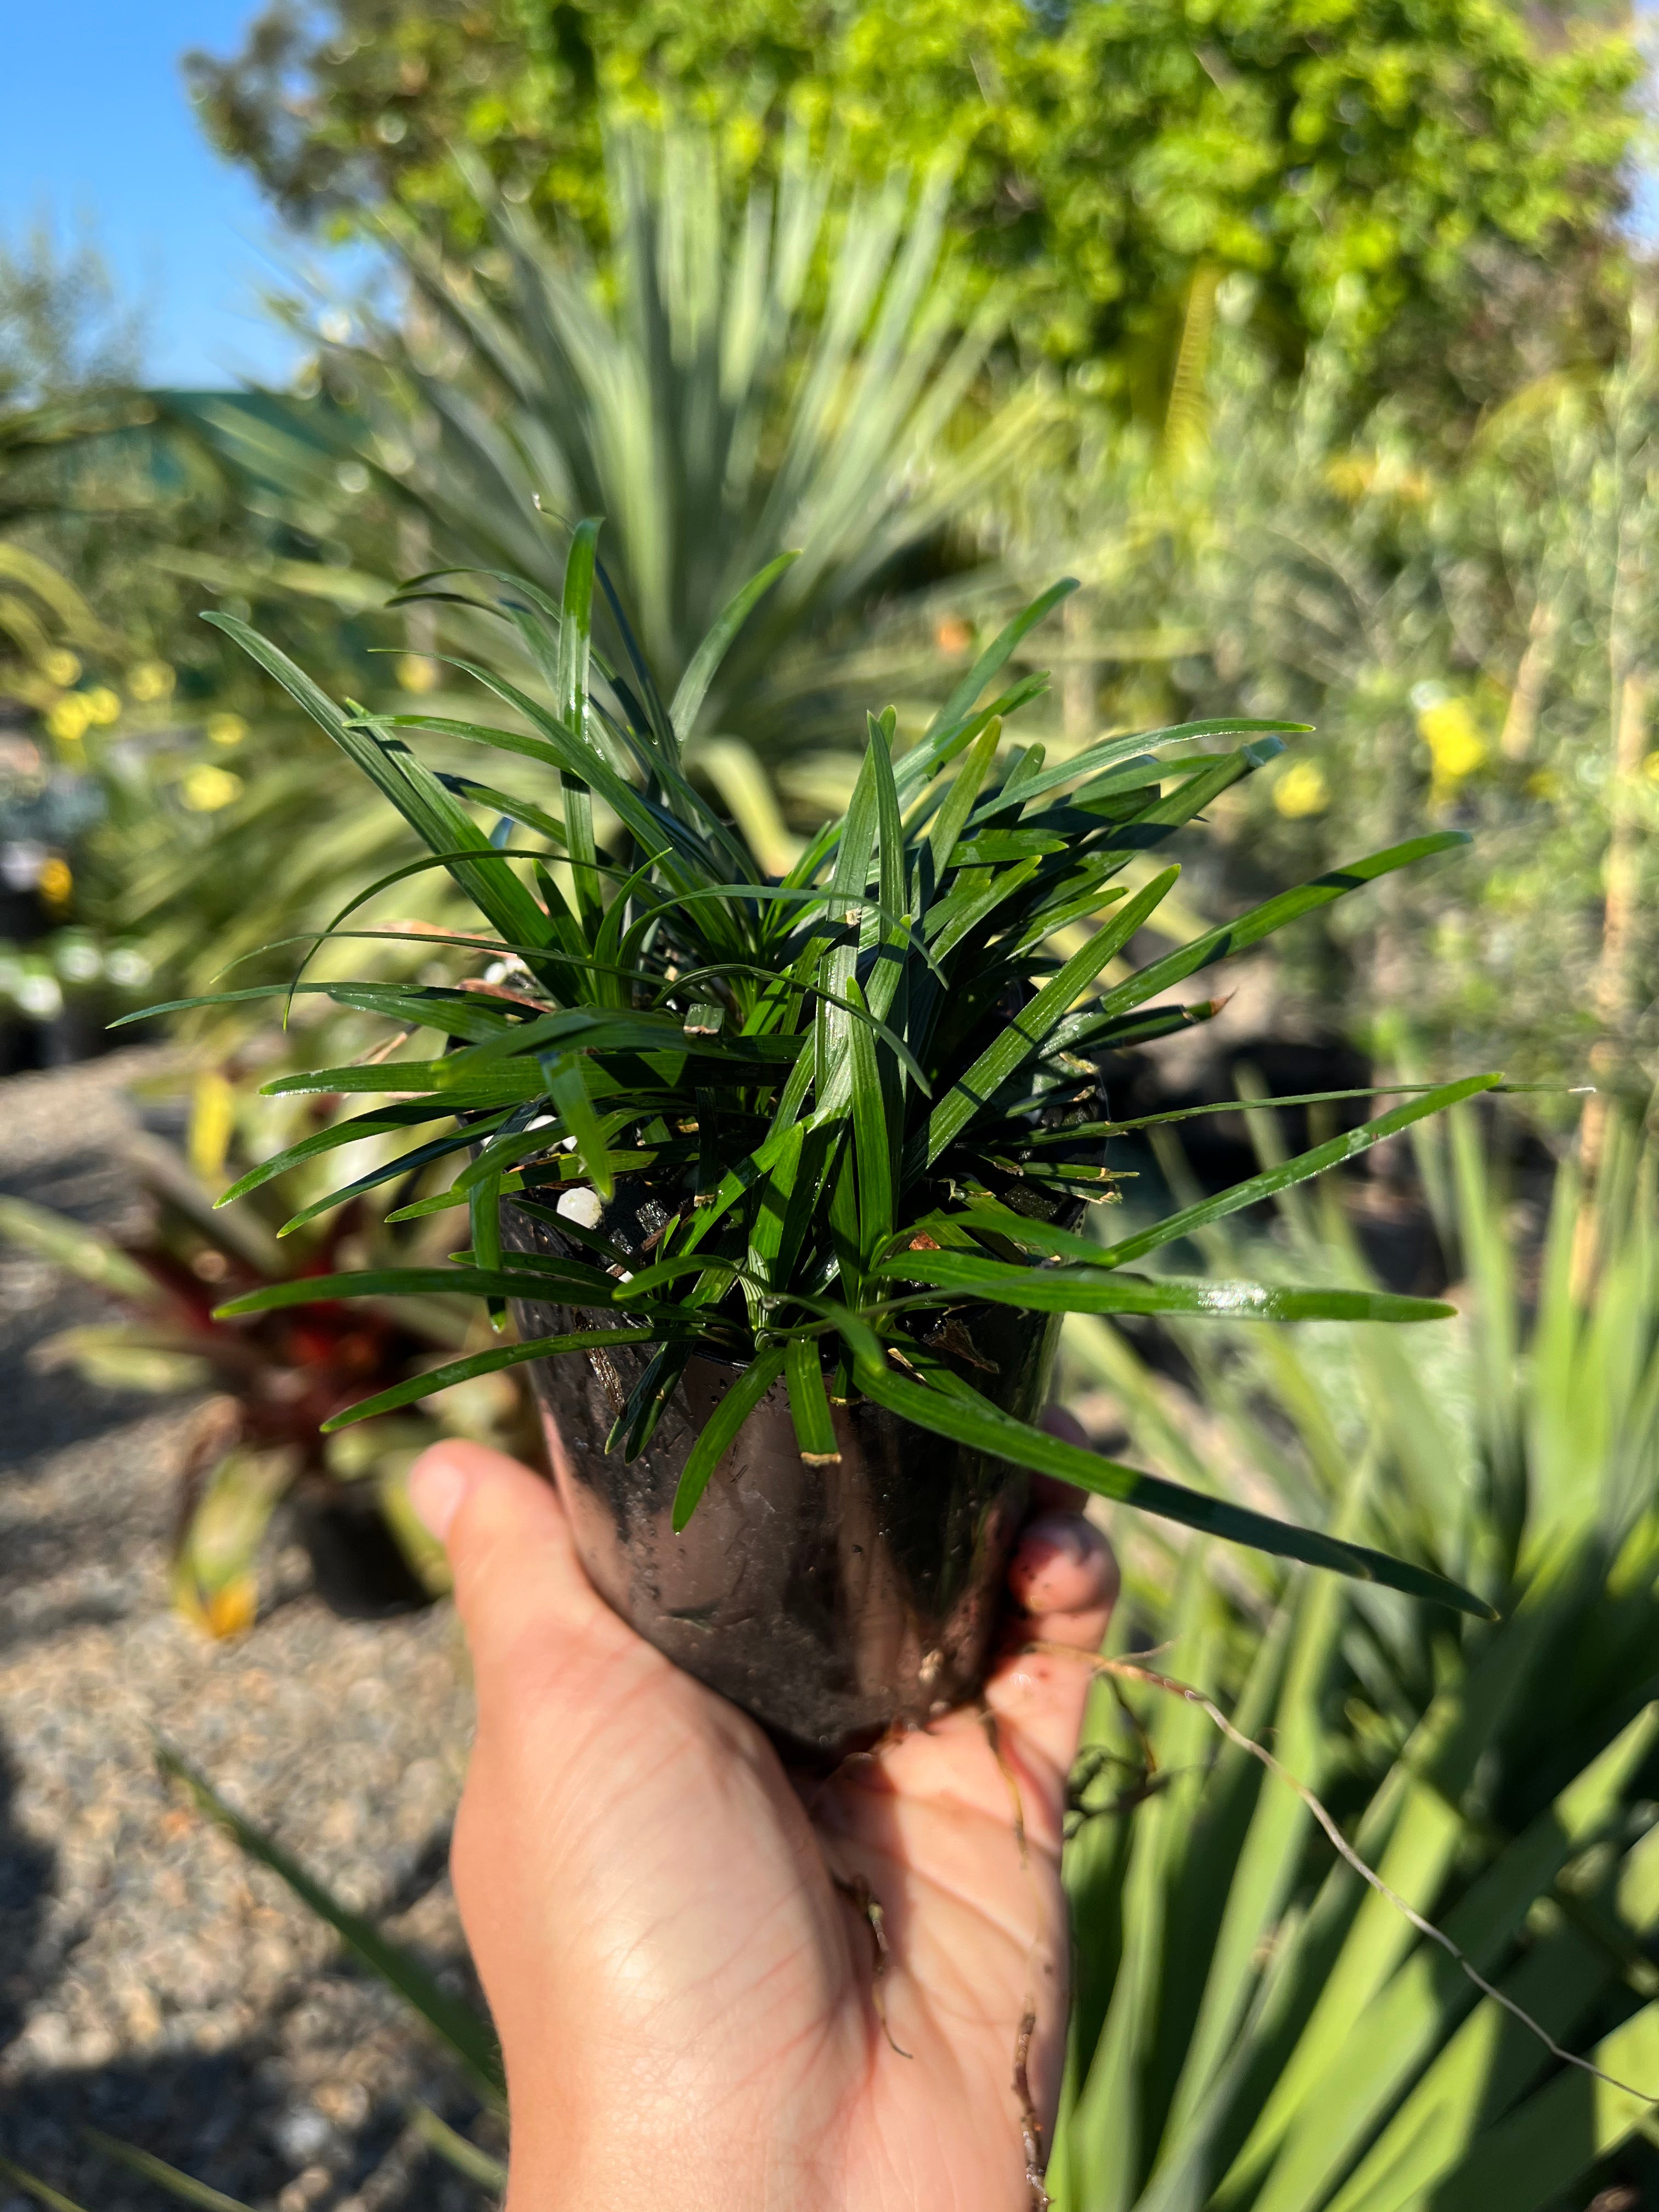 Ophiopogon japonica ‘Nana’ - Dwarf Mondo Grass